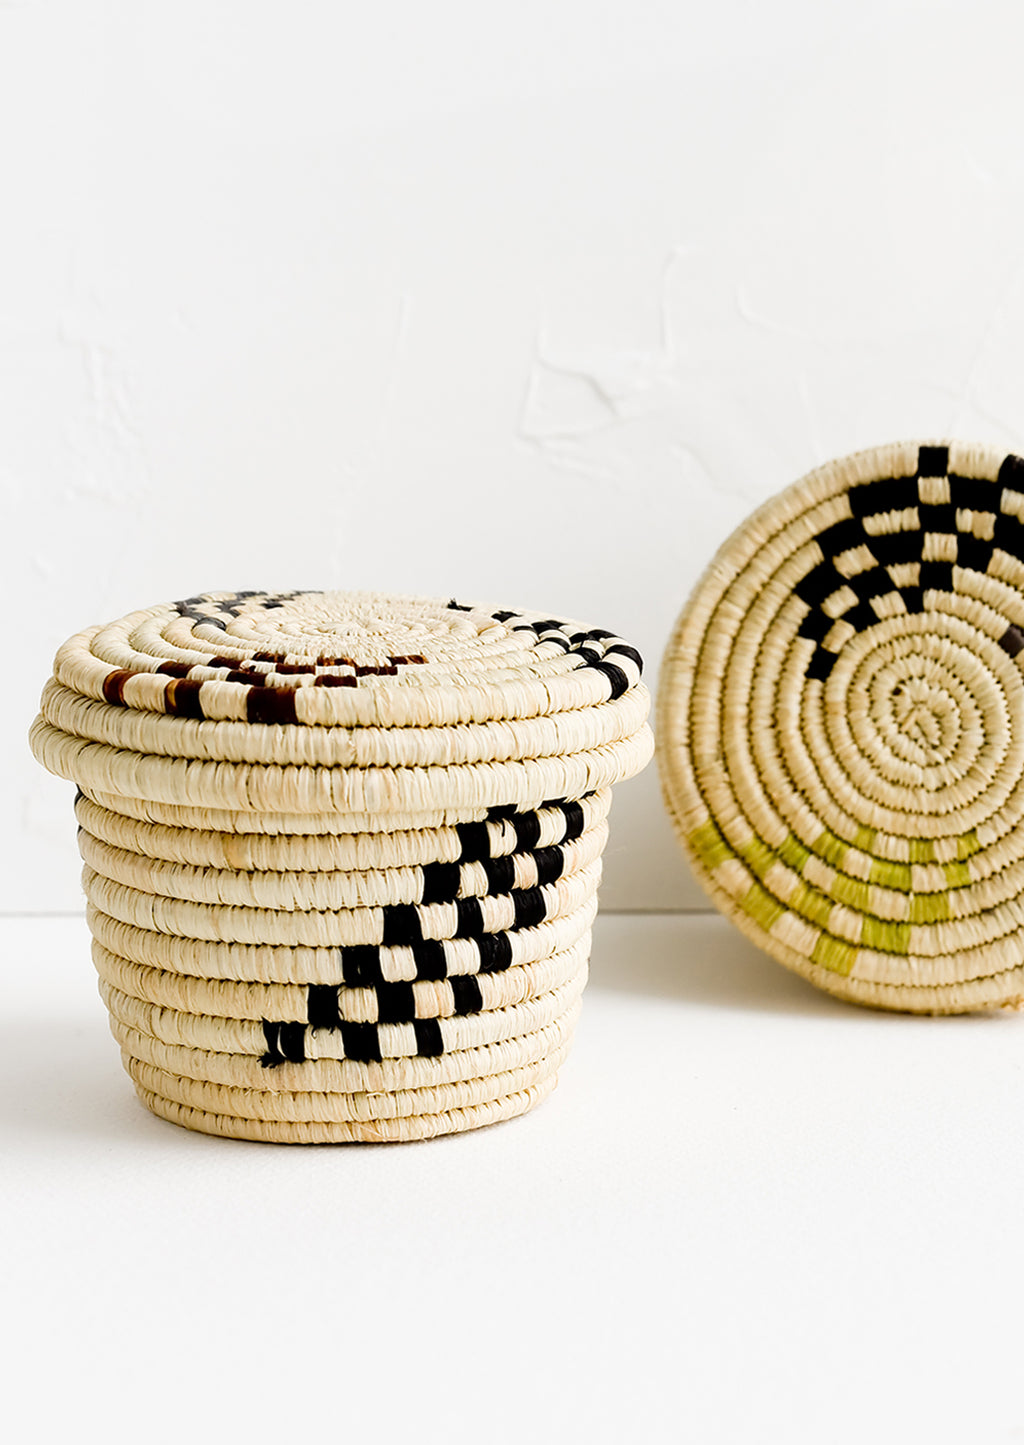 4: Small raffia baskets in woven checker print.